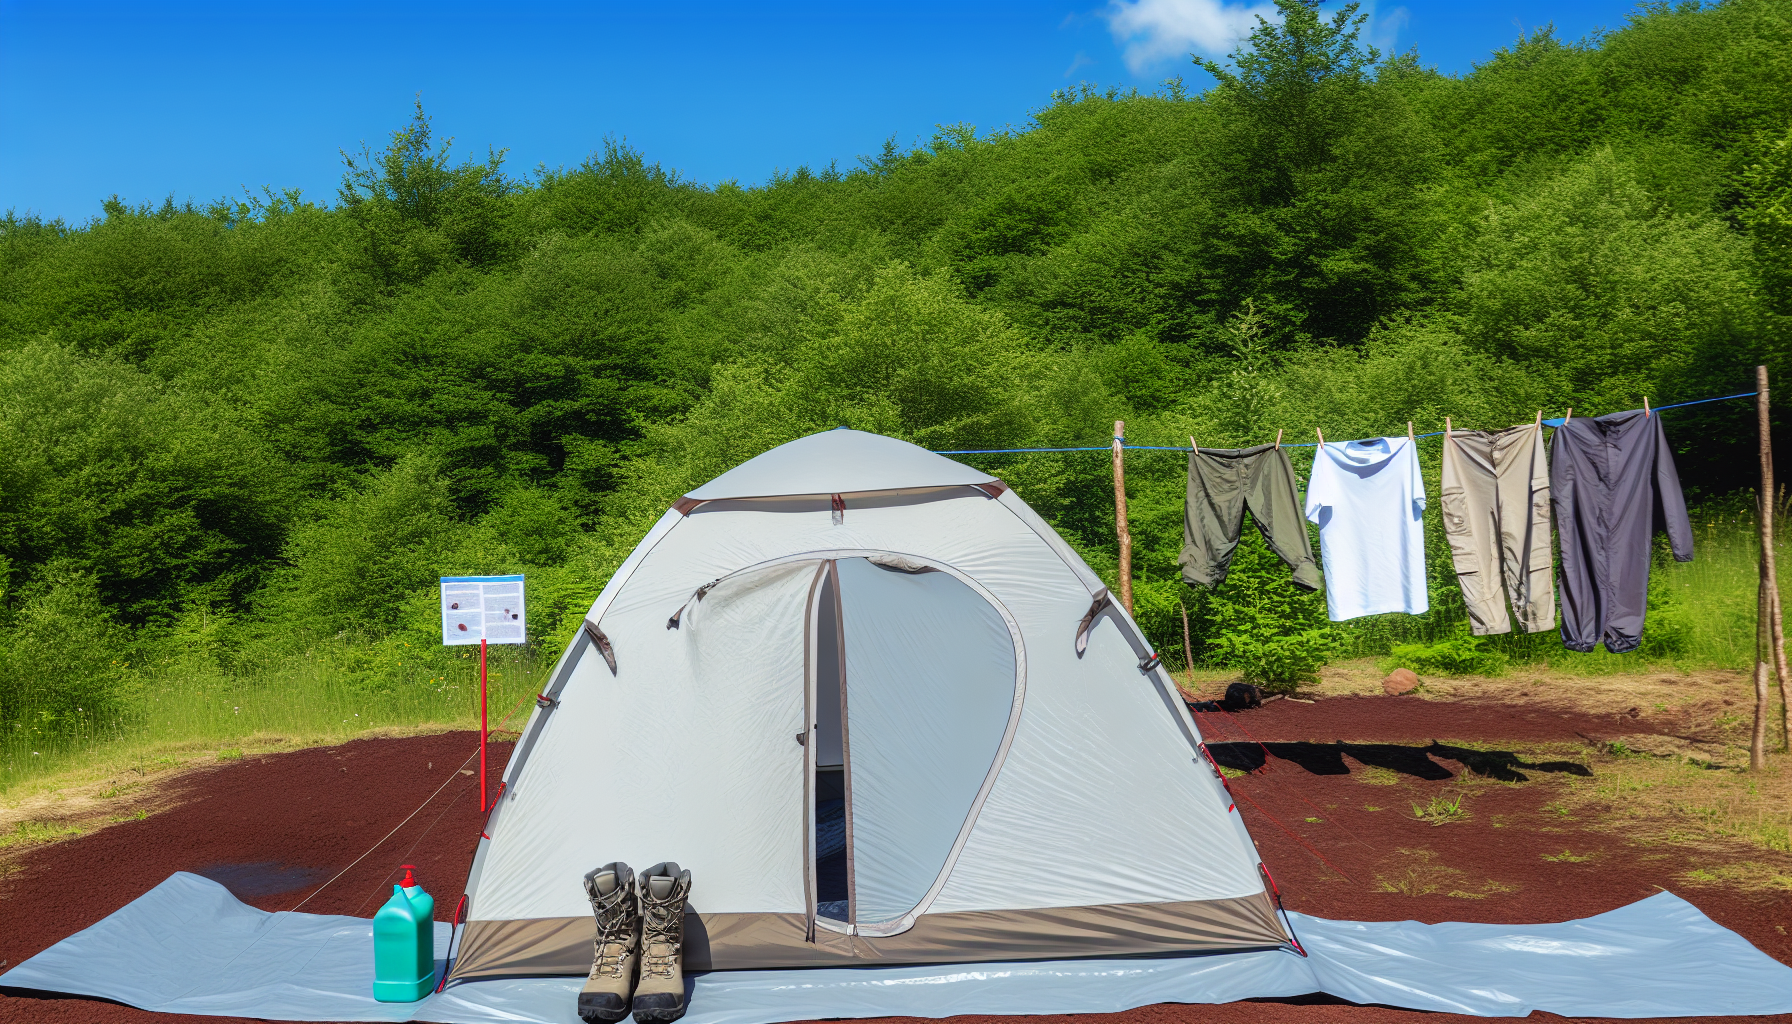 Comment se protéger des piqûres de tiques en camping ?